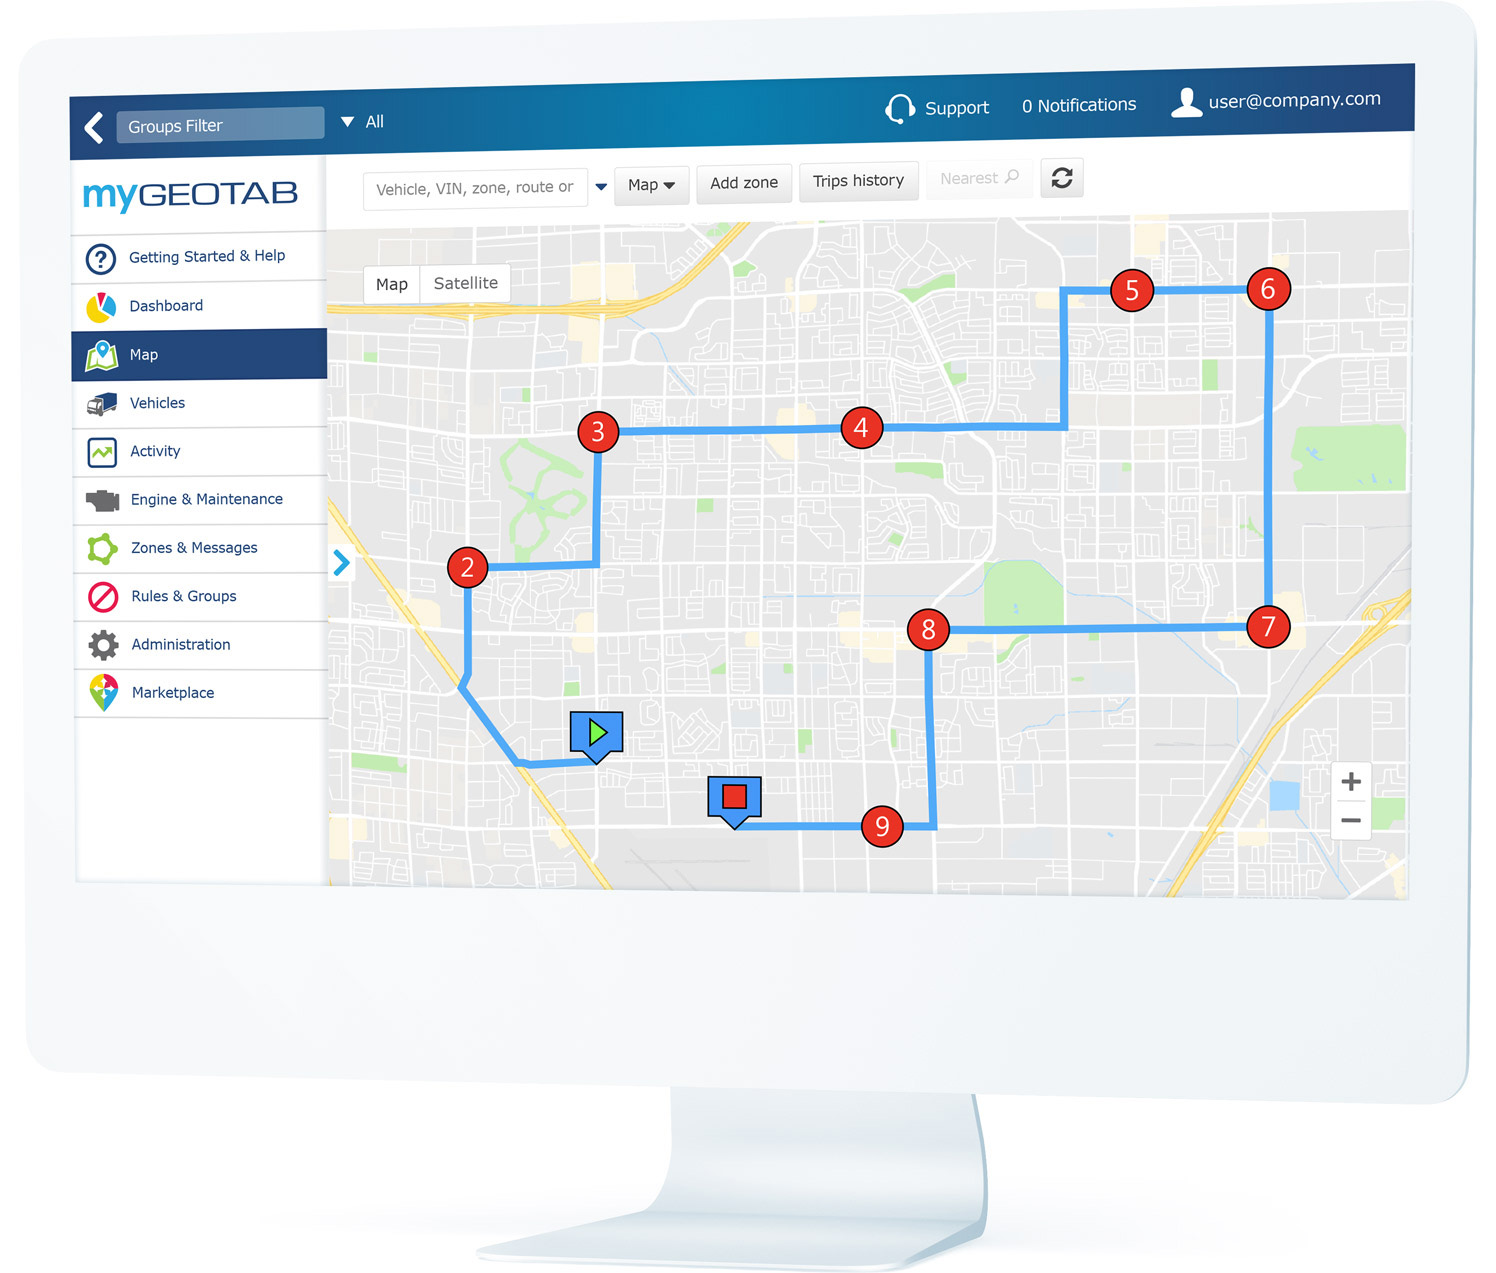 MyGeotab UI上显示的计划路线和航路点